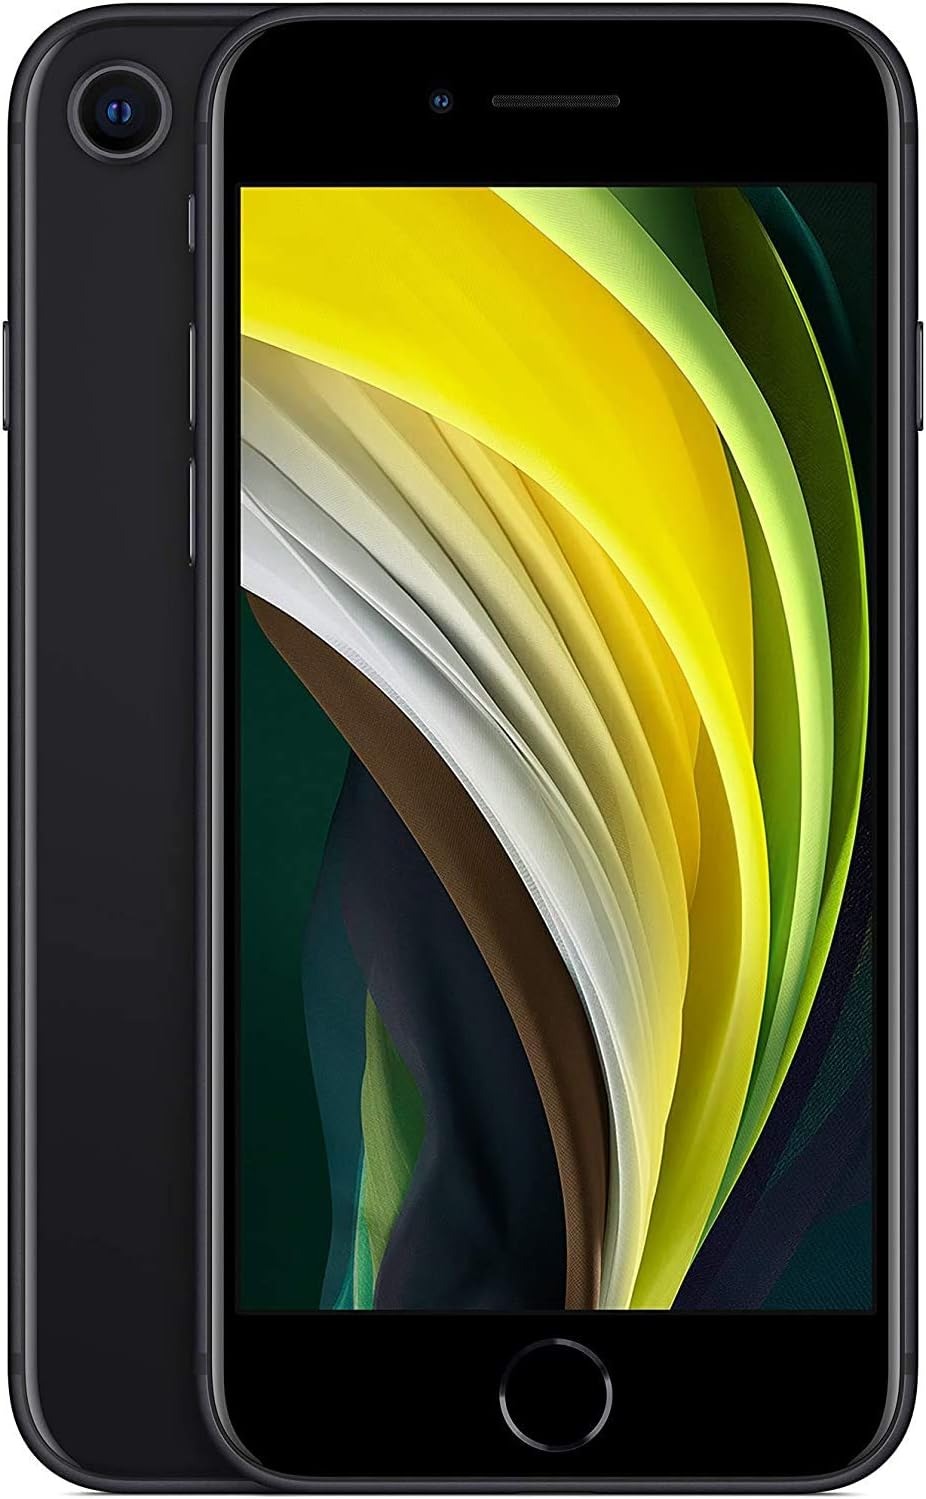 Apple iPhone SE (2nd generation) 64GB (Unlocked) - Black (Used)